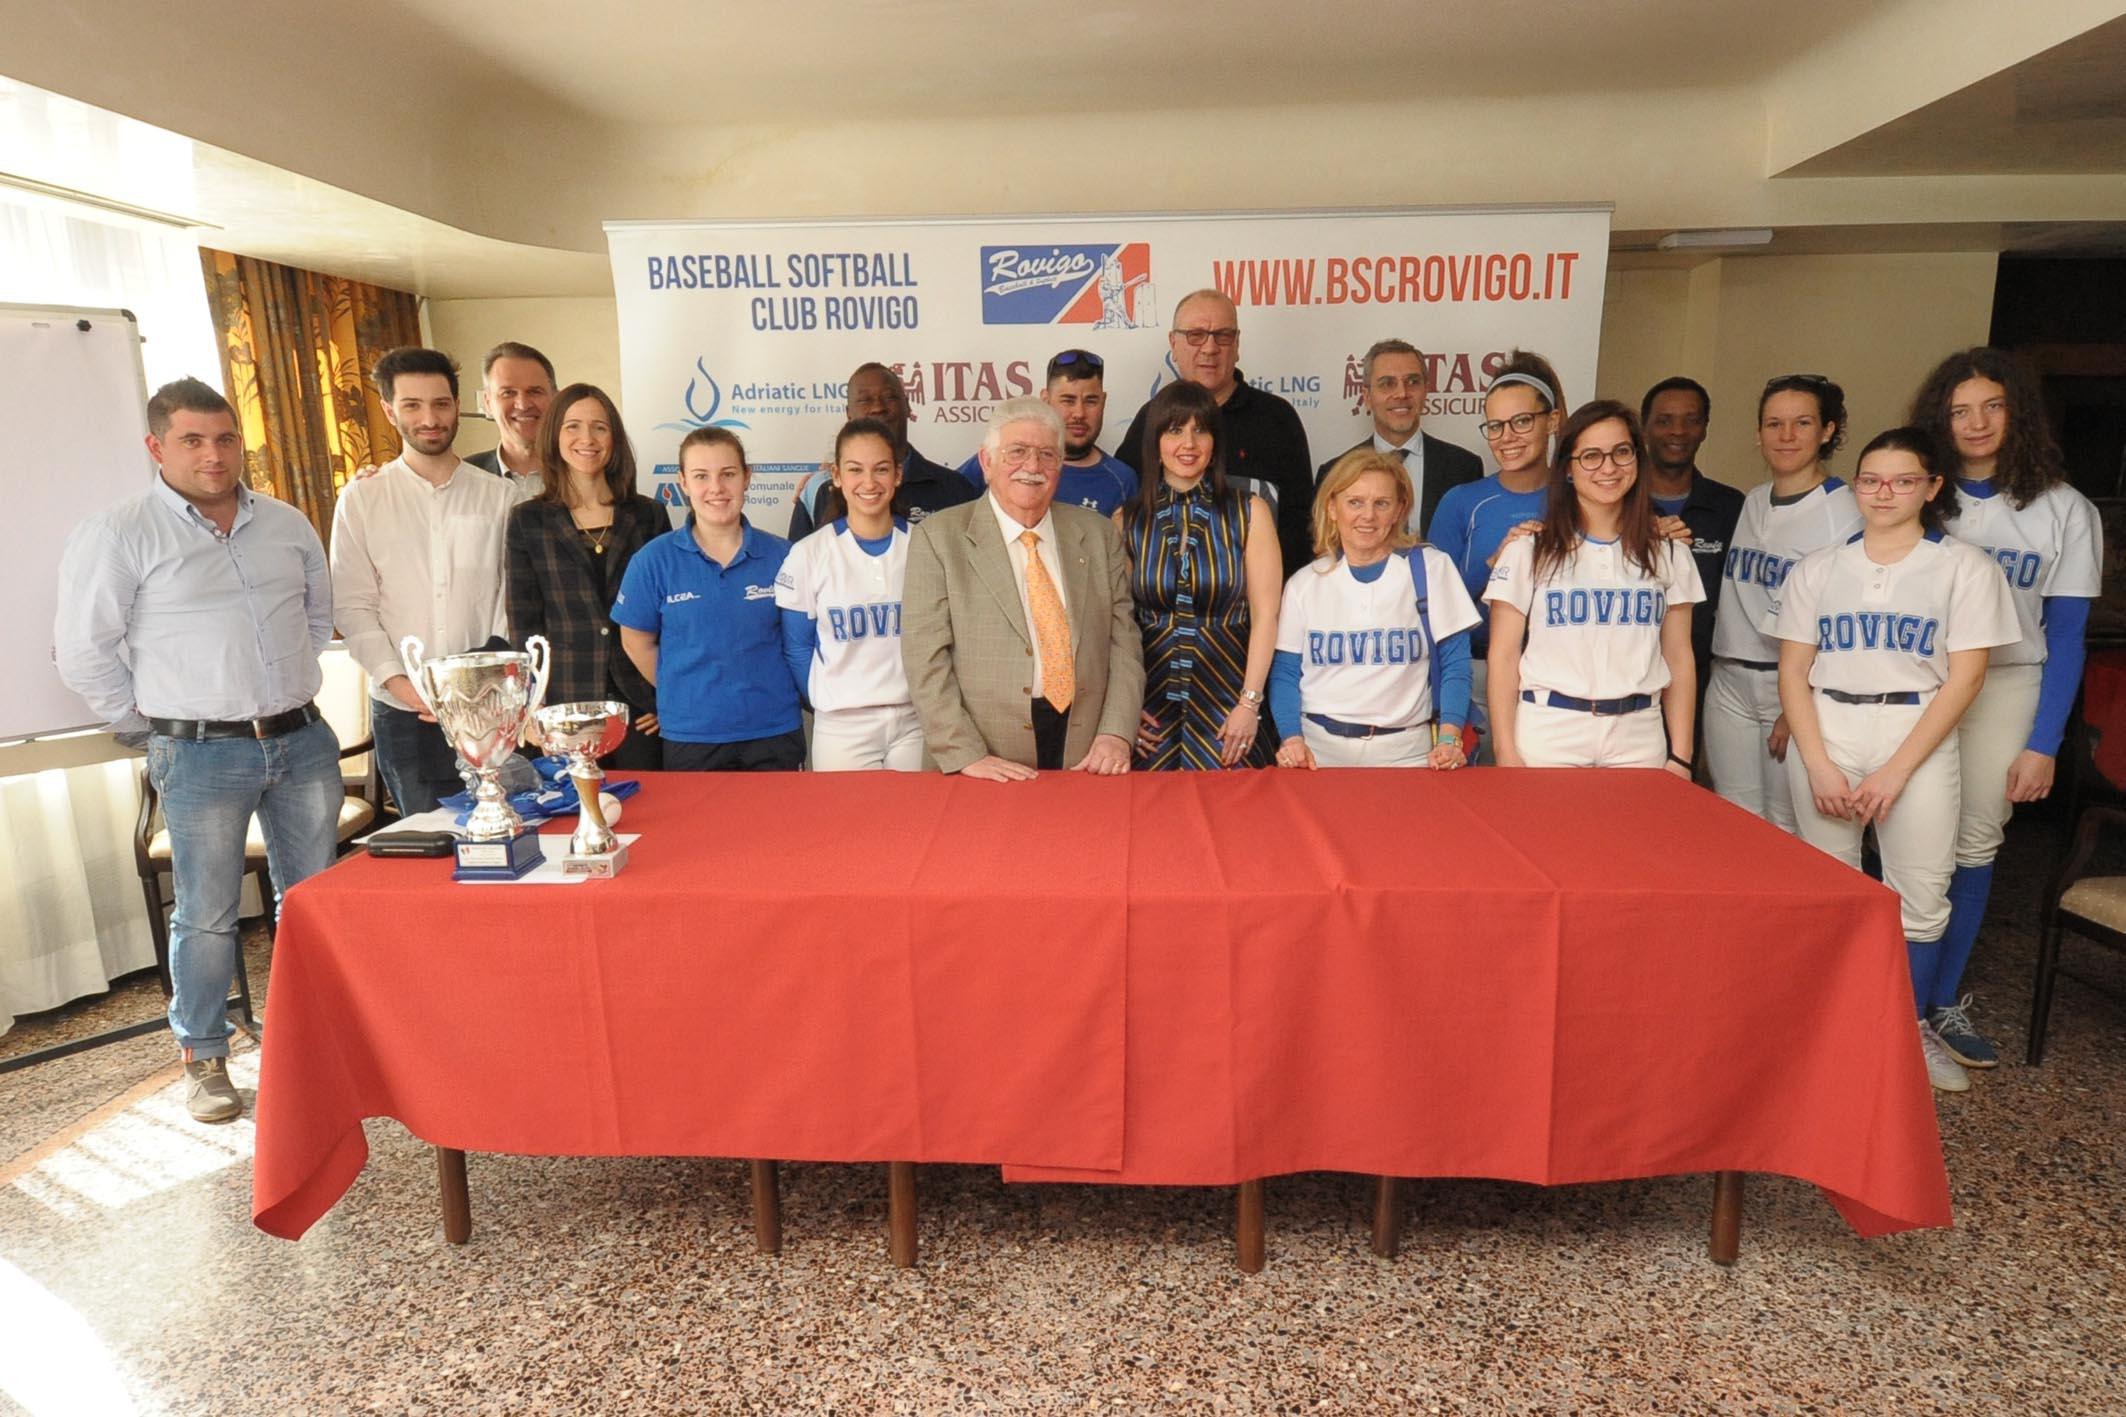 Baseball Softball Club Rovigo: al via la stagione 2017